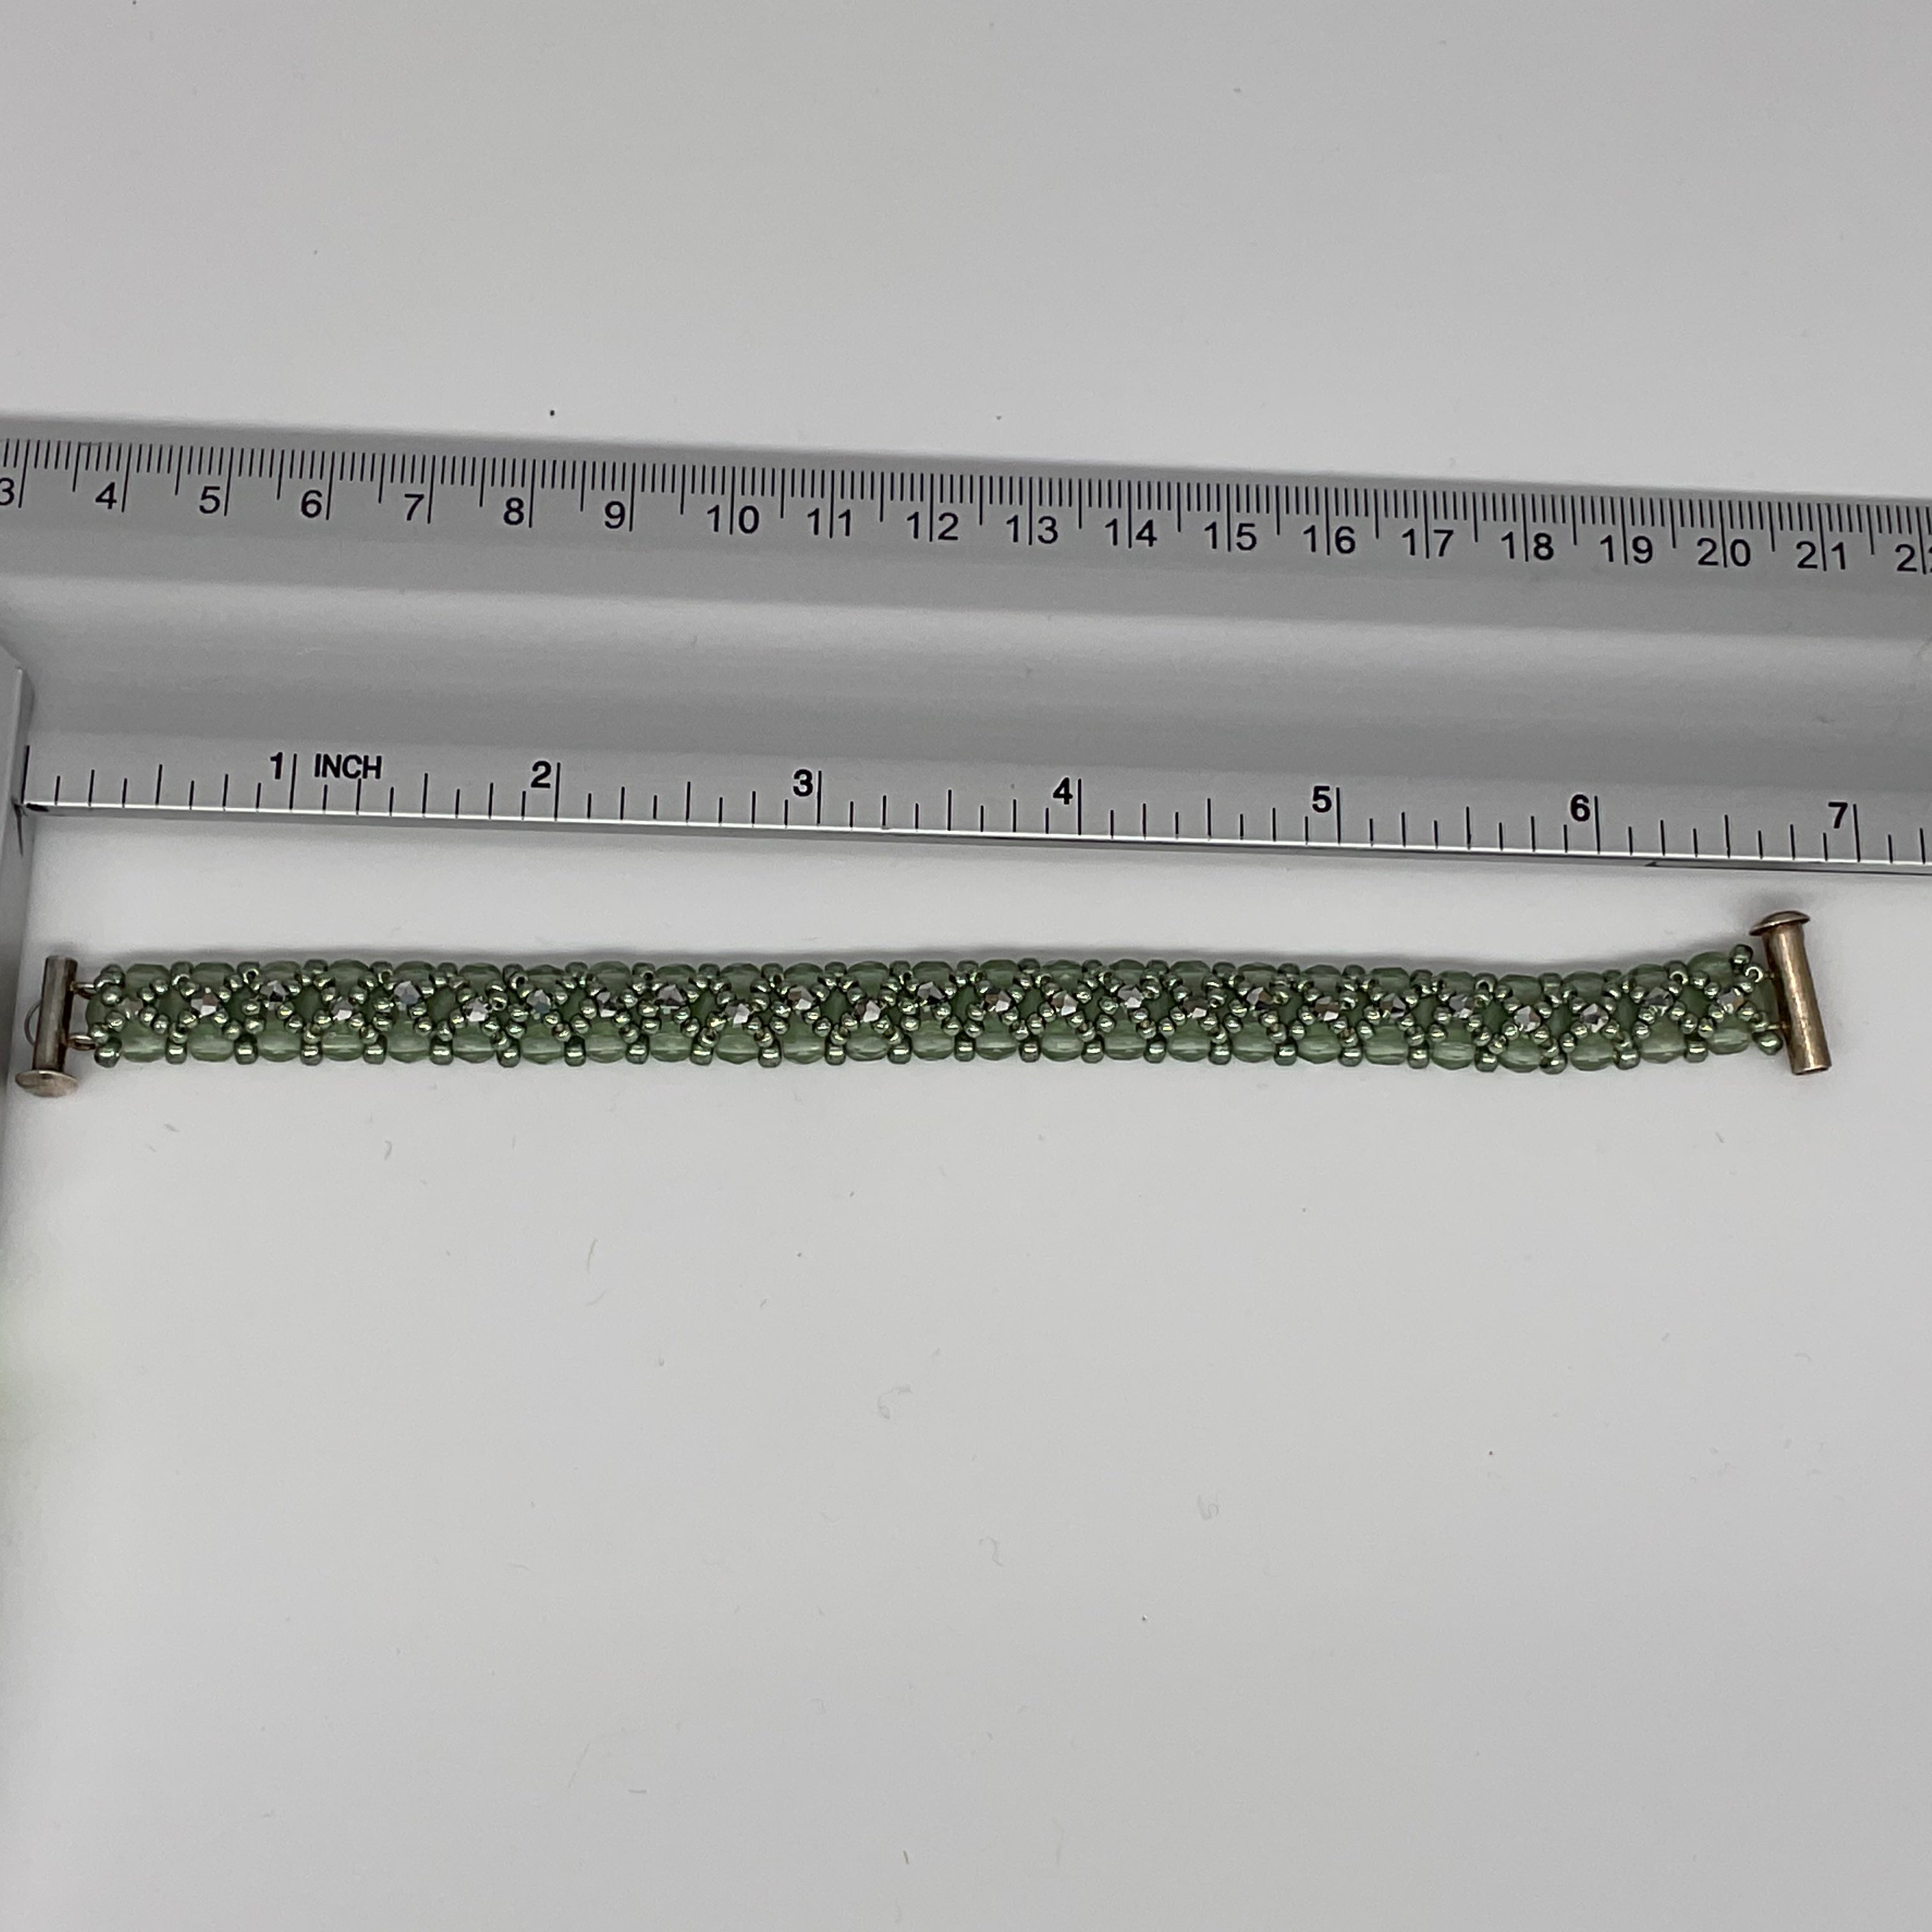 Silvery Green Bracelet